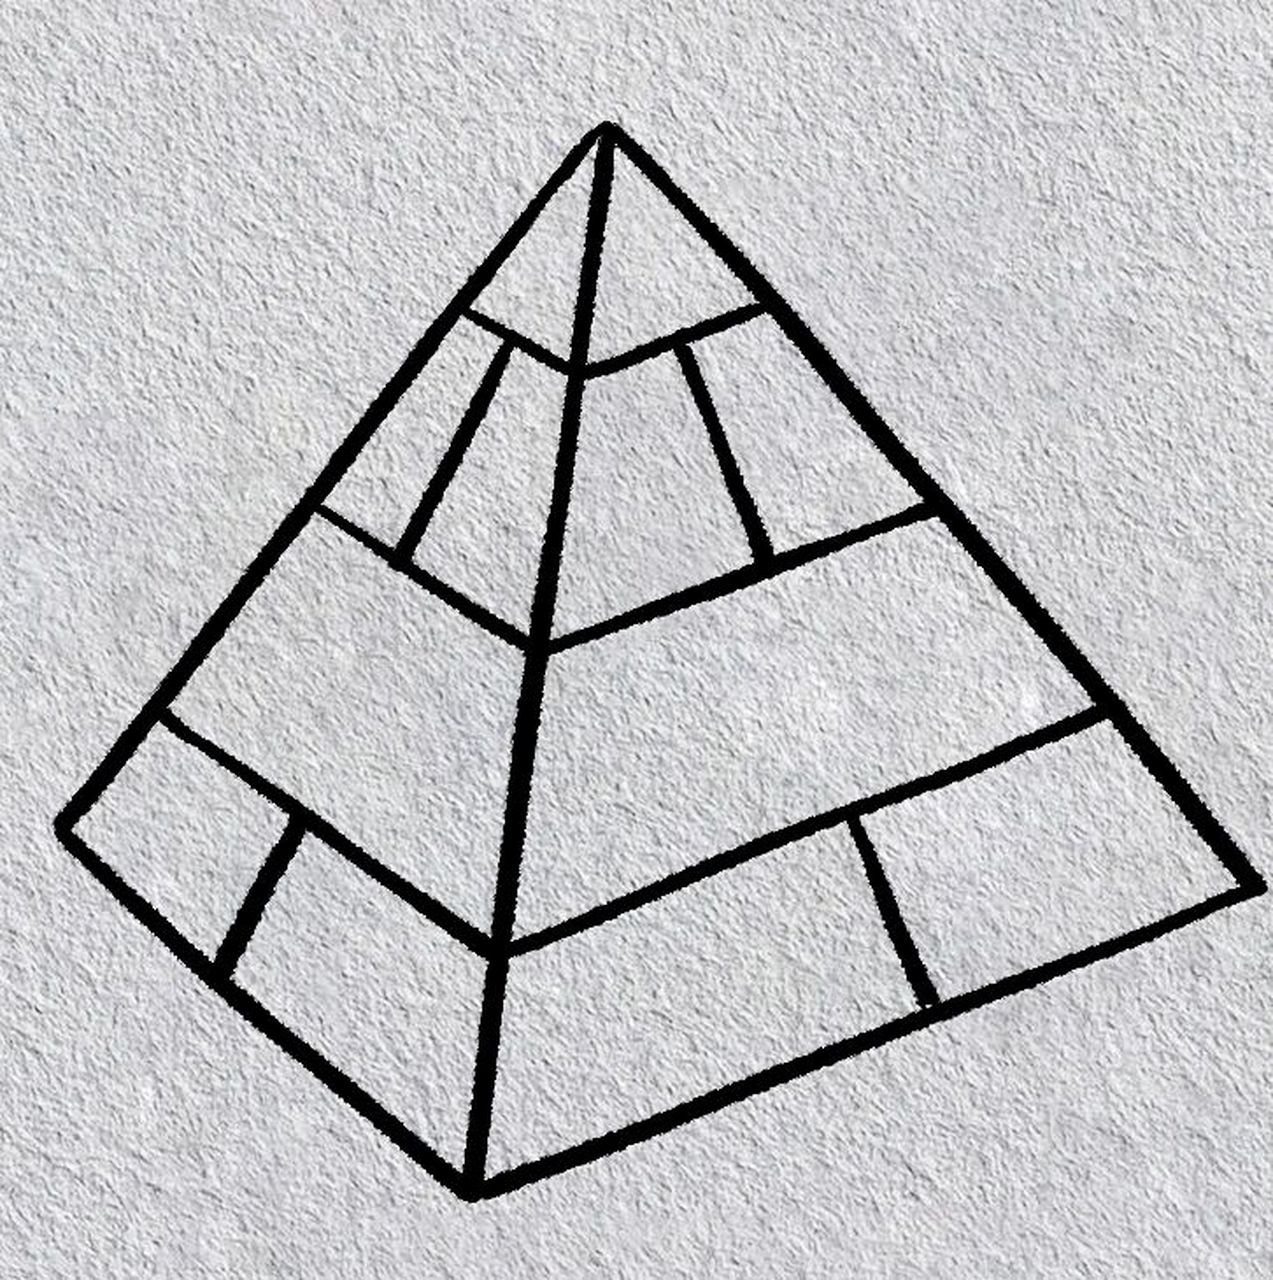 金字塔图片 简笔画图片